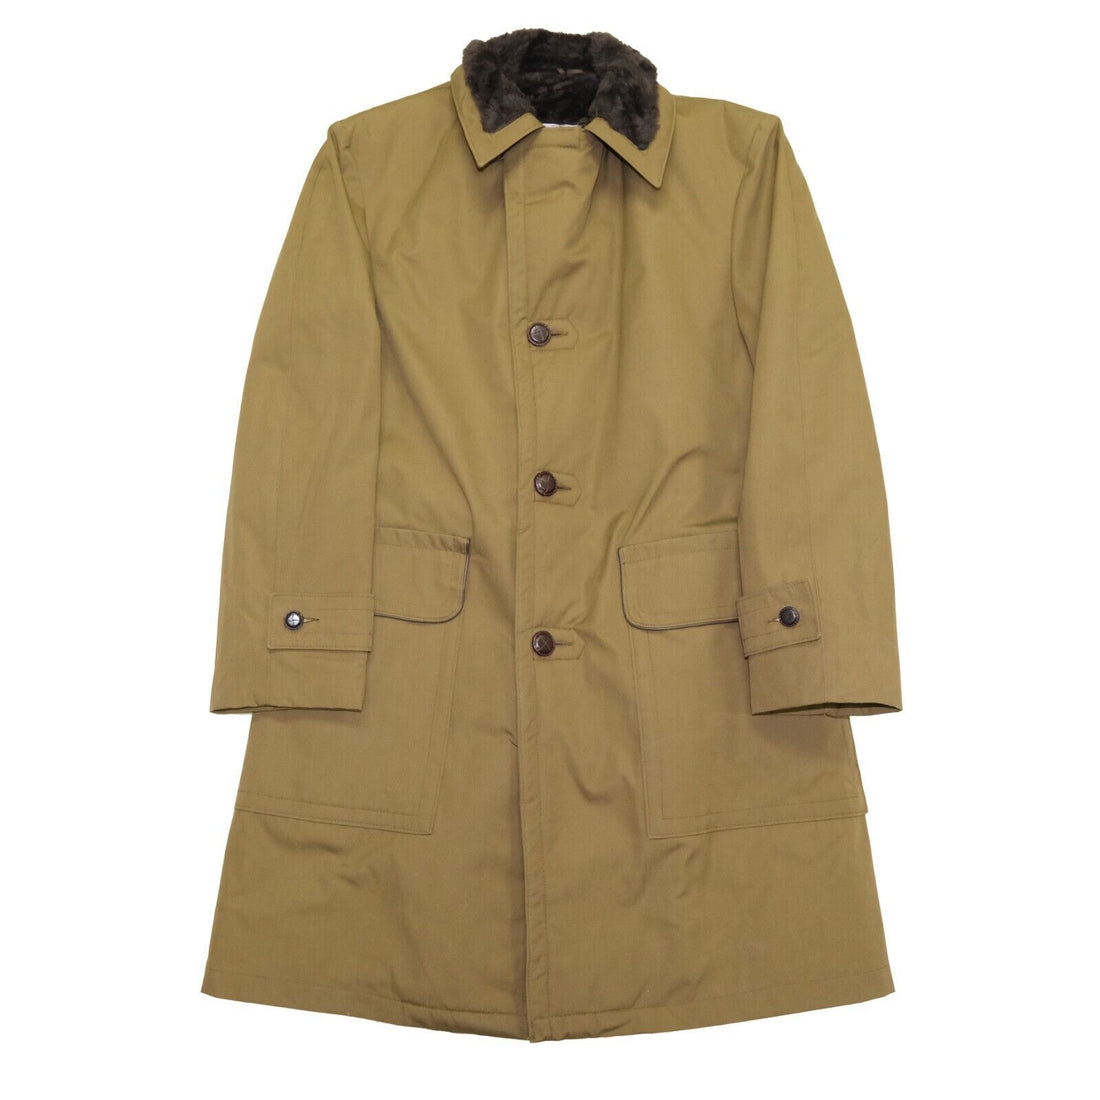 Vintage McGregor Parka Coat Jacket Size 38 Green Shearling